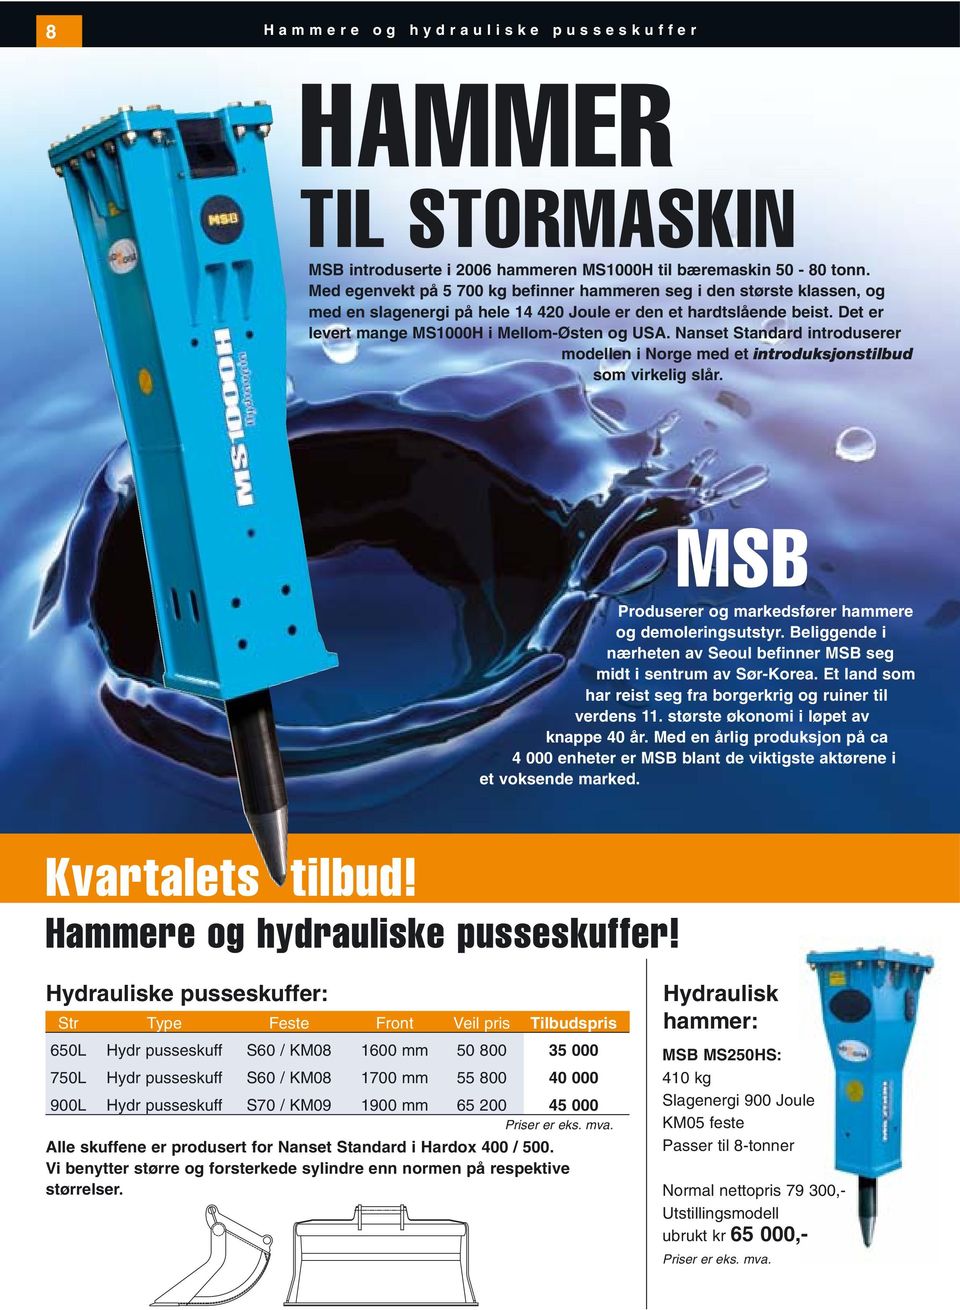 Nanset Standard introduserer modellen i Norge med et introduksjonstilbud som virkelig slår. MSB Produserer og markedsfører hammere og demoleringsutstyr.